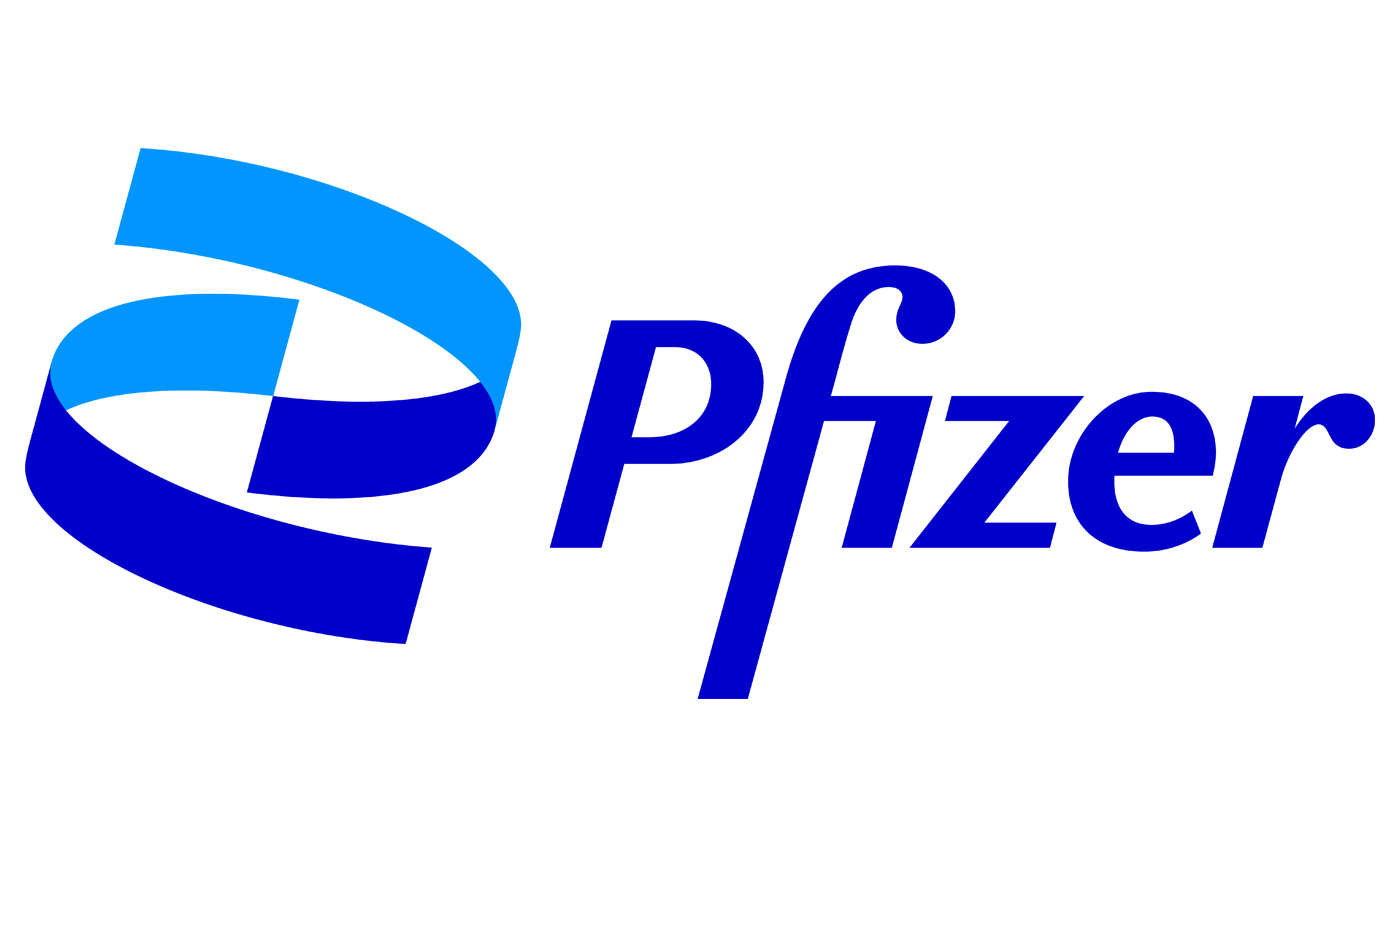 Η Pfizer Hellas ανακηρύχθηκε από τους ασθενείς ως η εταιρεία με την καλύτερη φήμη σε Ελλάδα και Κύπρο, μέσα από την παγκόσμια ετήσια έρευνα PatientView